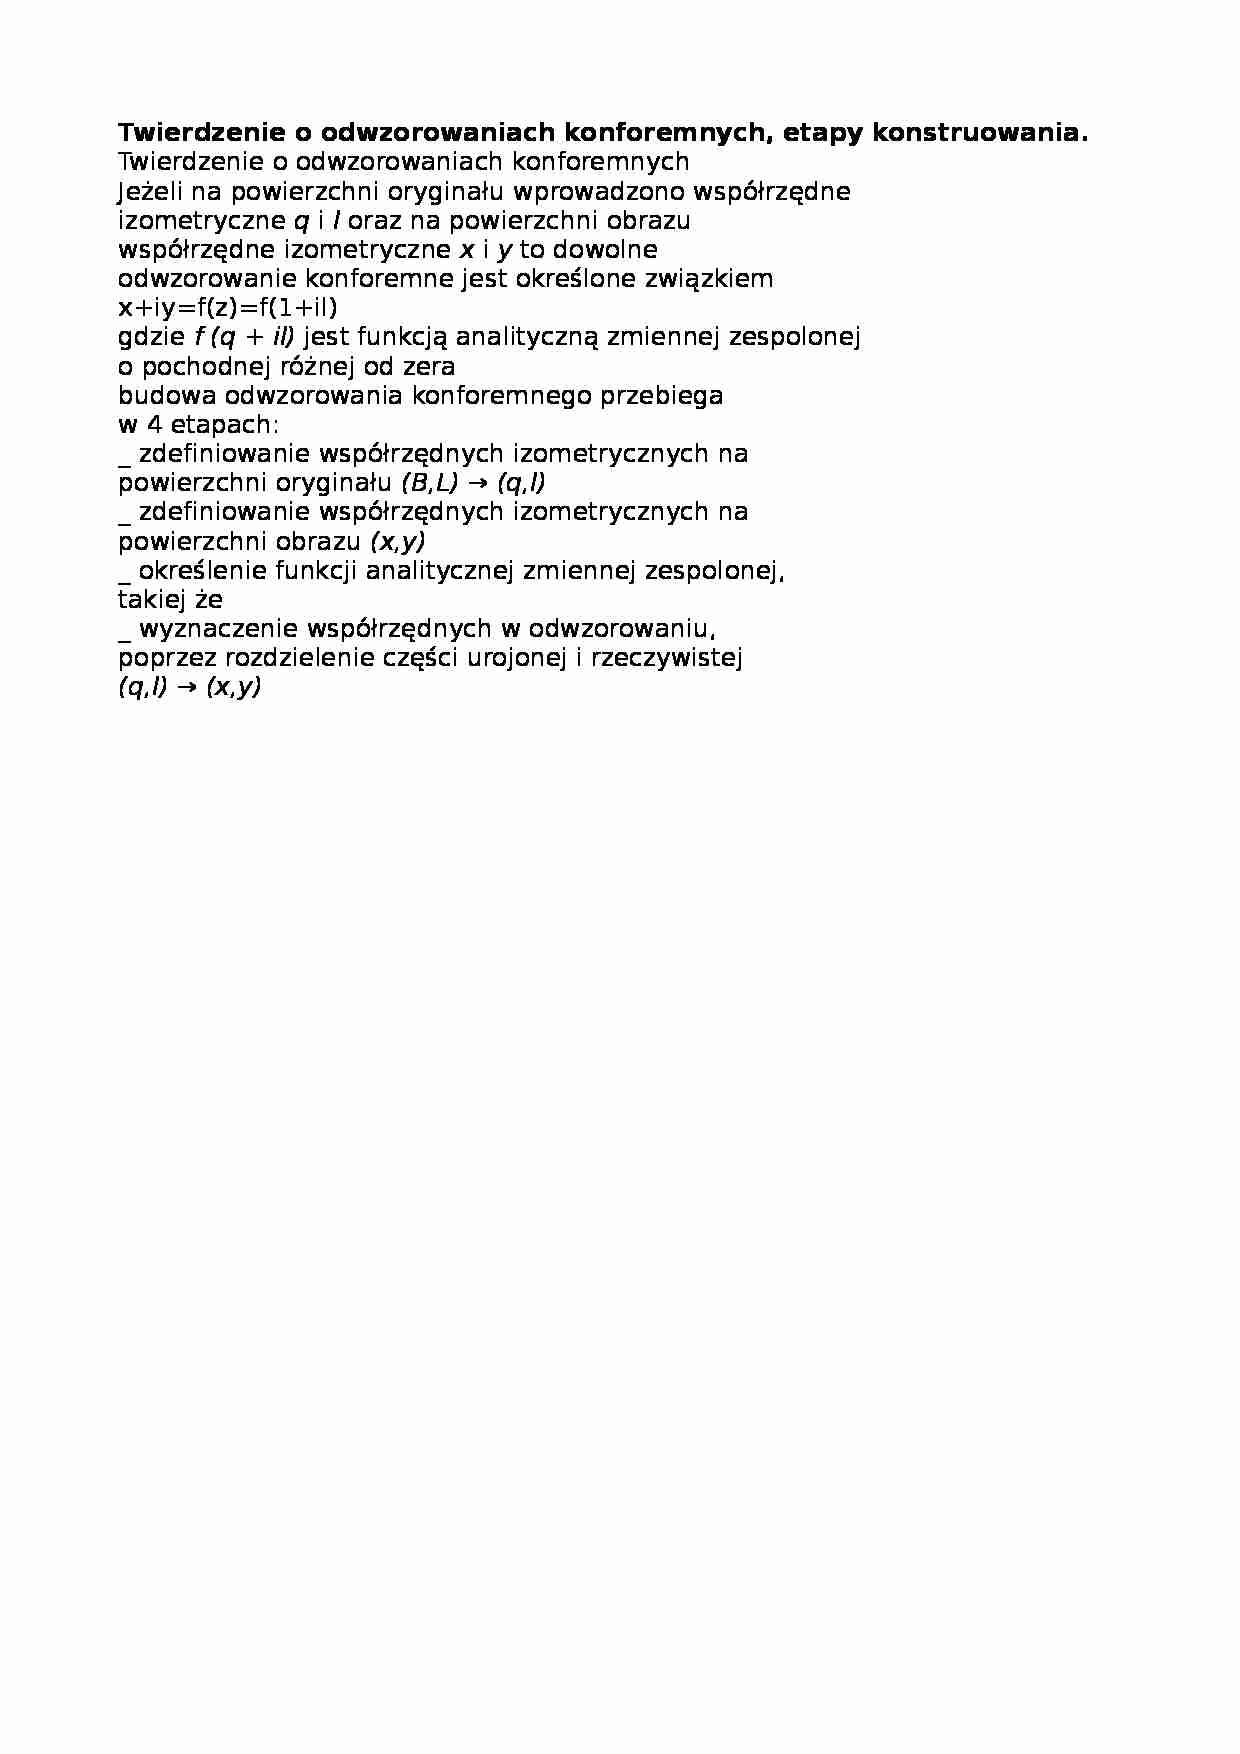 Twierdzenie o odwzorowaniach konforemnych, etapy konstruowania-opracowanie - strona 1